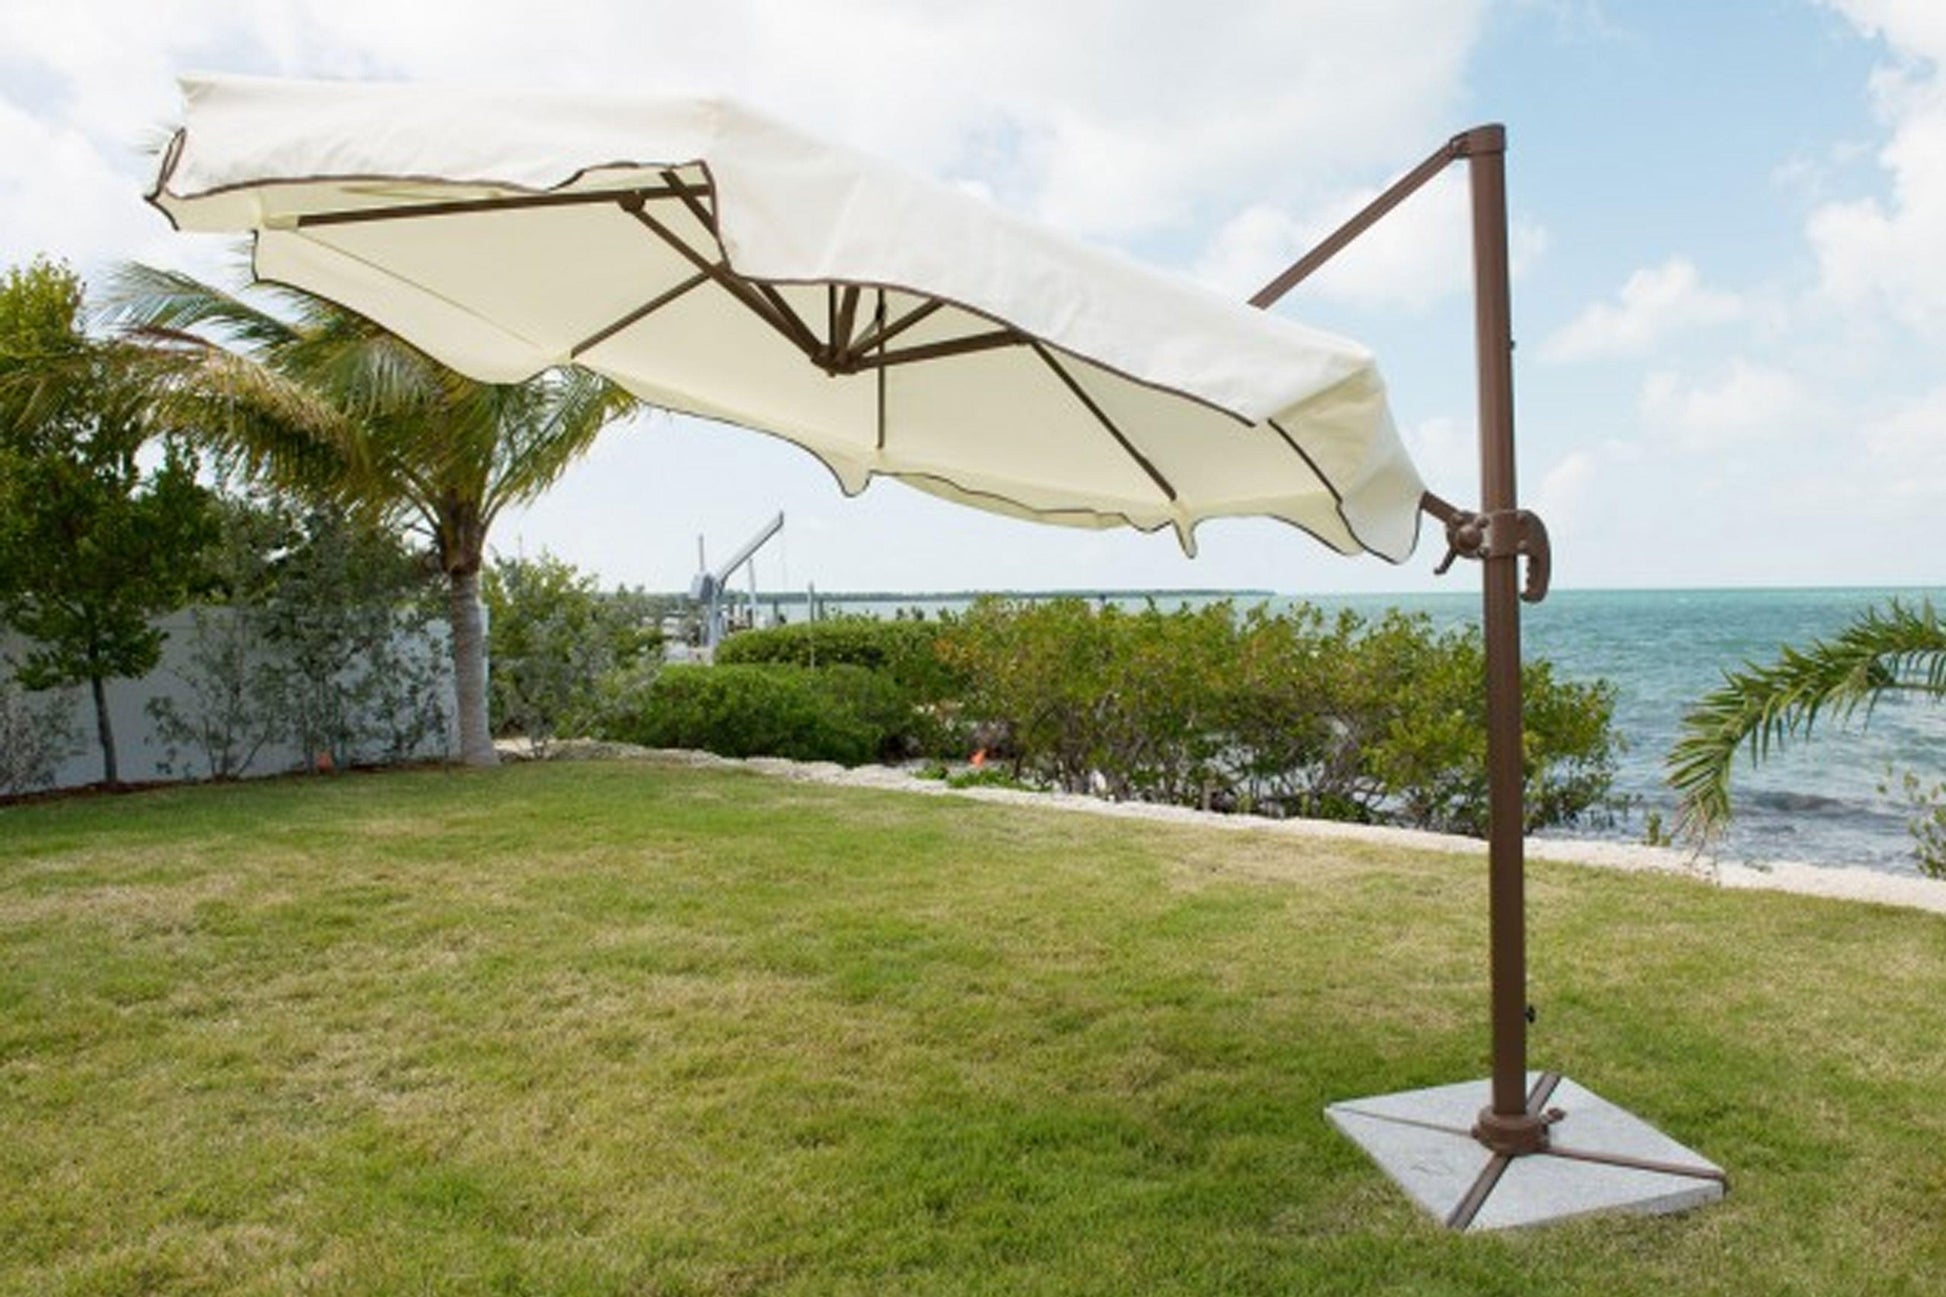 Panama Jack 10 FT DIA Cantilever Umbrella with stone bases - Venini Furniture 